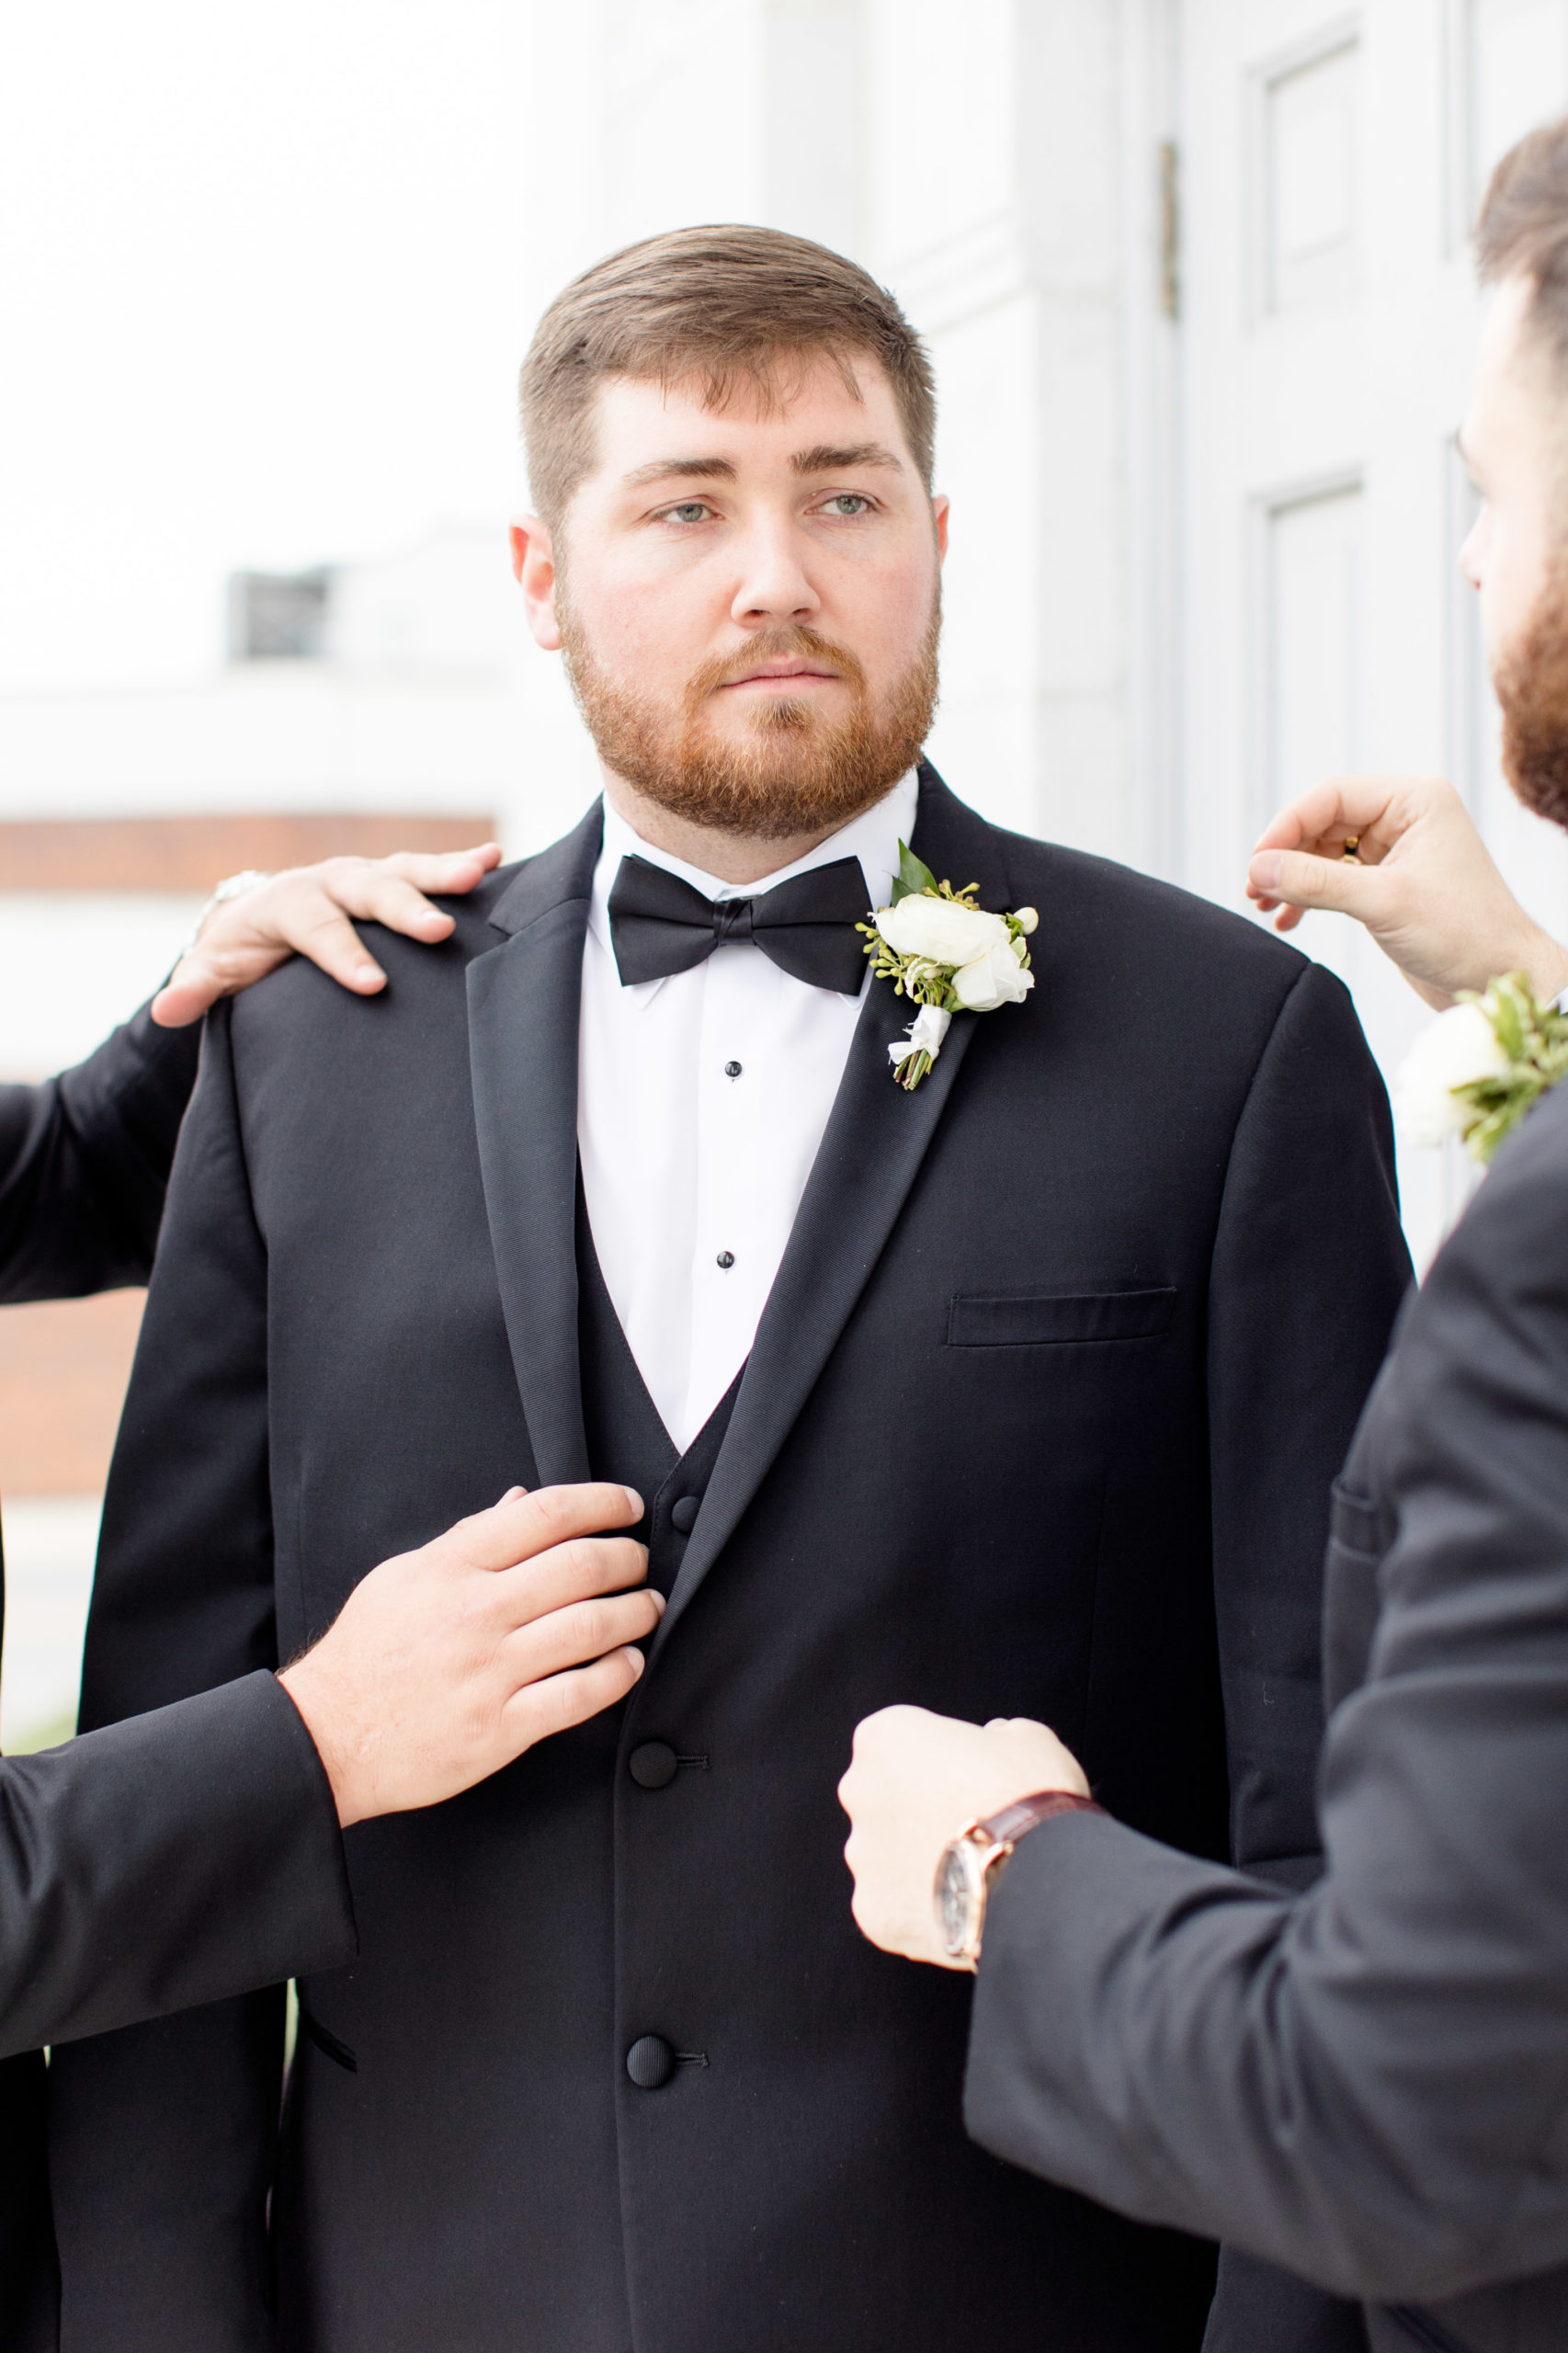 Groomsmen help straighten groom's jacket.